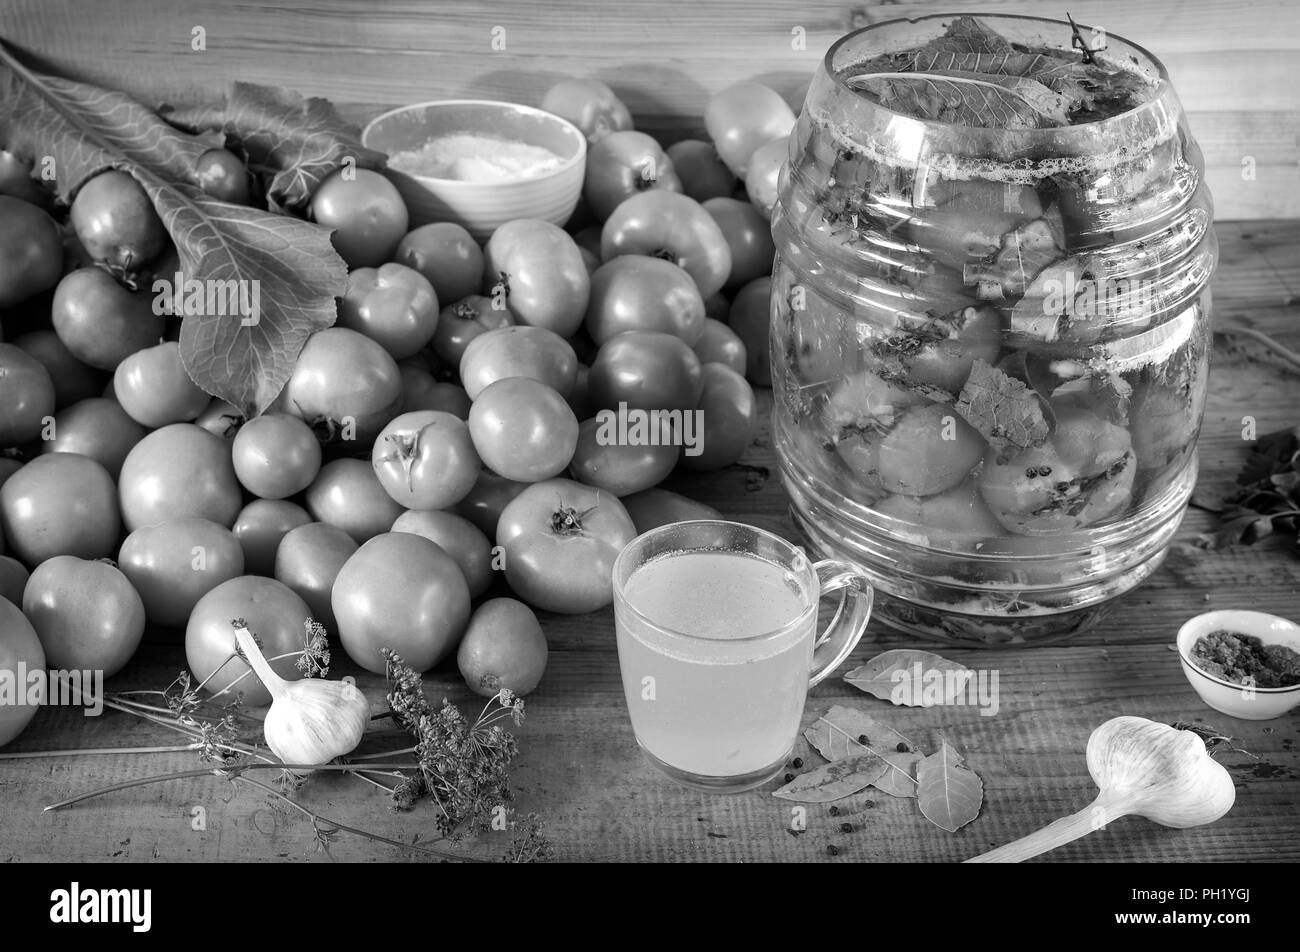 Salate i pomodori in un vasetto di vetro. Nei pressi di pomodori, spezie. Immagine in bianco e nero. Foto Stock